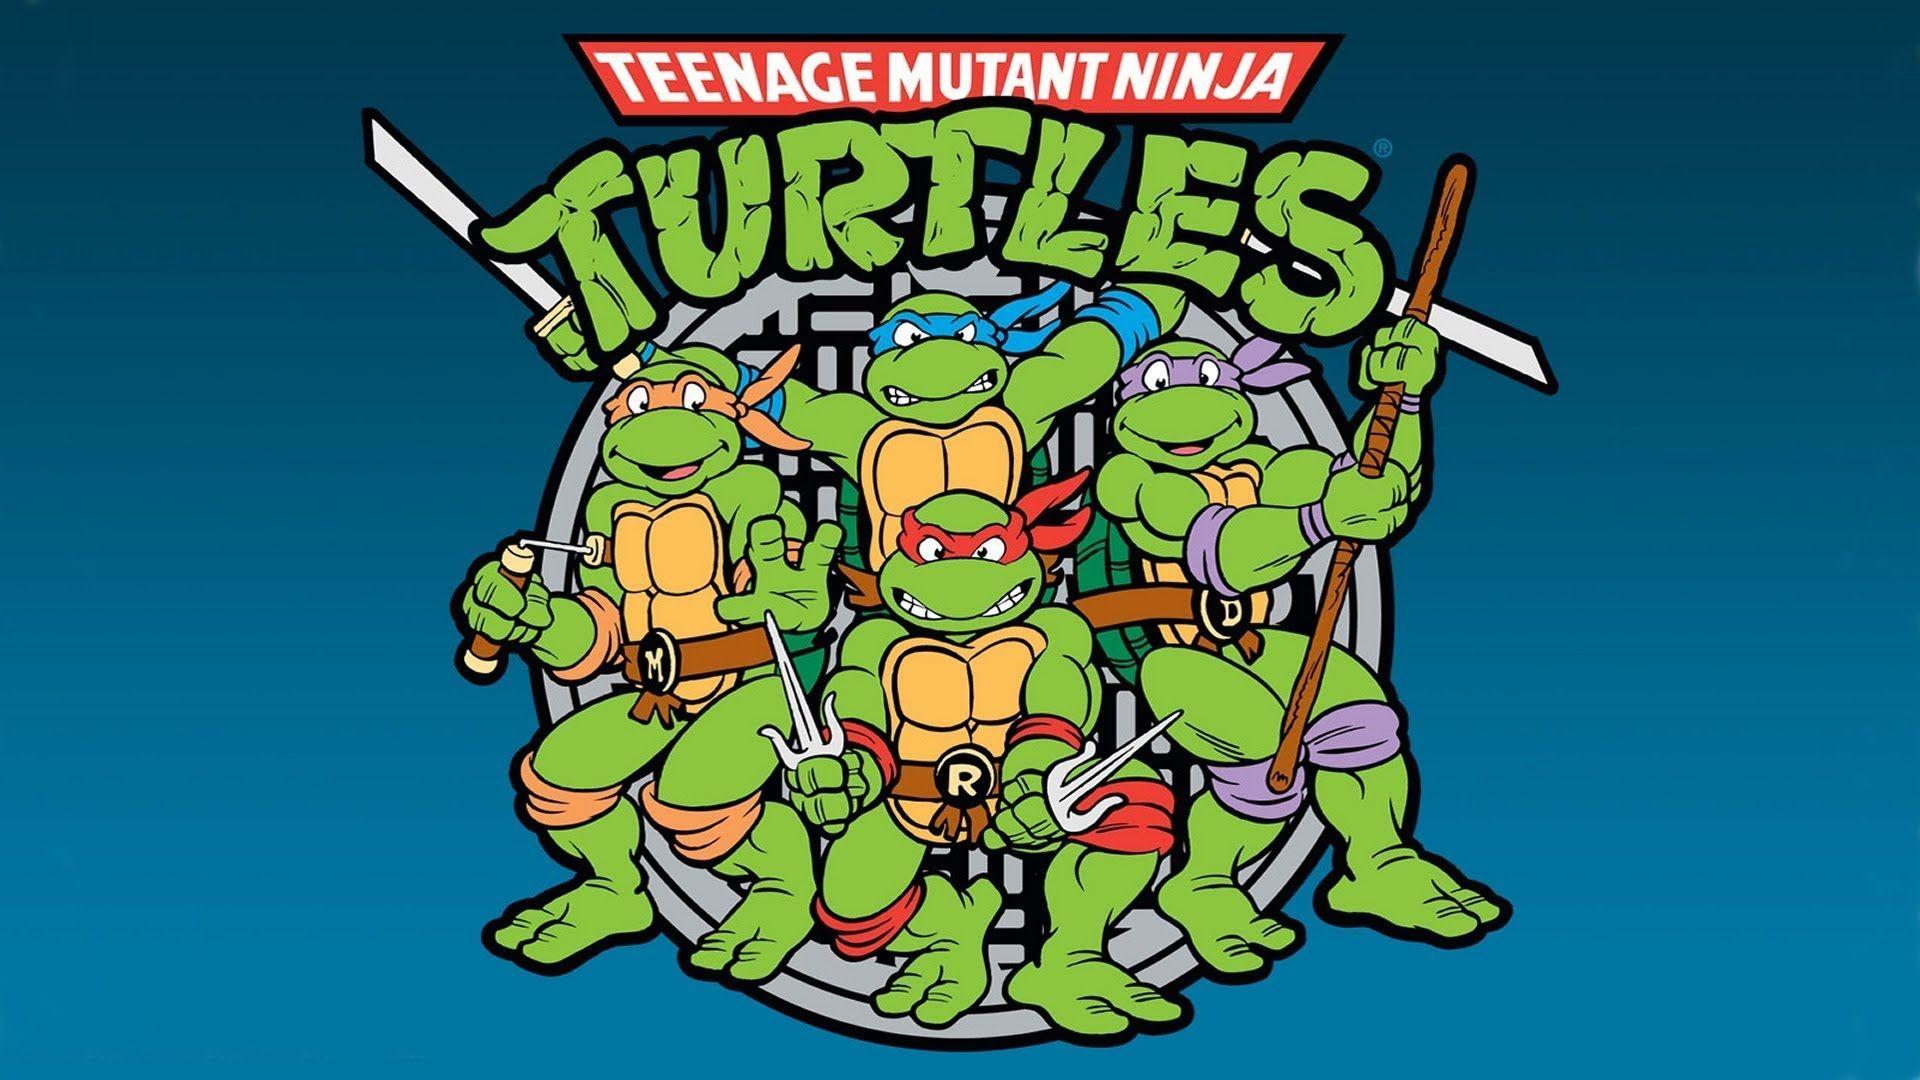 1980s Teenage Mutant Ninja Turtles Wallpaper Free 1980s Teenage Mutant Ninja Turtles Background